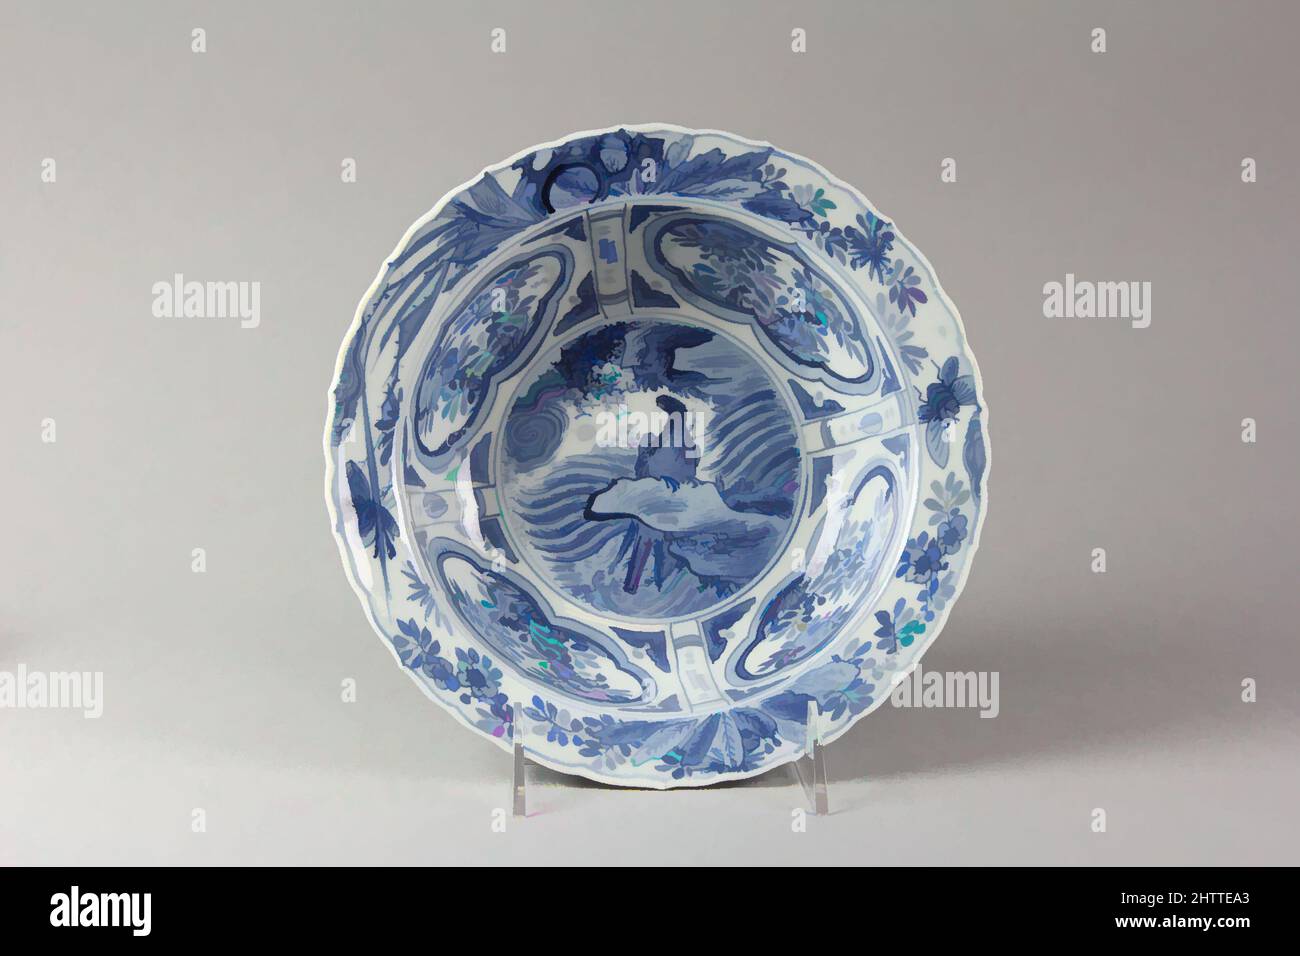 Von Dish inspirierte Kunst, Ming-Dynastie (1368–1644), ca. 1600, China, Porzellan in Unterglasur blau lackiert, H. 2 1/2 Zoll (6,4 cm); Durchm. 8 1/2 Zoll (21,6 cm); Fuß-Durchm. 4 5/8 Zoll (11,7 cm), Keramik, die Grundform der Schale, mit einem dünnen Körper, ist von einer niederländischen Presse-Metall abgeleitet, Classic Works modernisiert von Artotop mit einem Schuss Moderne. Formen, Farbe und Wert, auffällige visuelle Wirkung auf Kunst. Emotionen durch Freiheit von Kunstwerken auf zeitgemäße Weise. Eine zeitlose Botschaft, die eine wild kreative neue Richtung verfolgt. Künstler, die sich dem digitalen Medium zuwenden und die Artotop NFT erschaffen Stockfoto